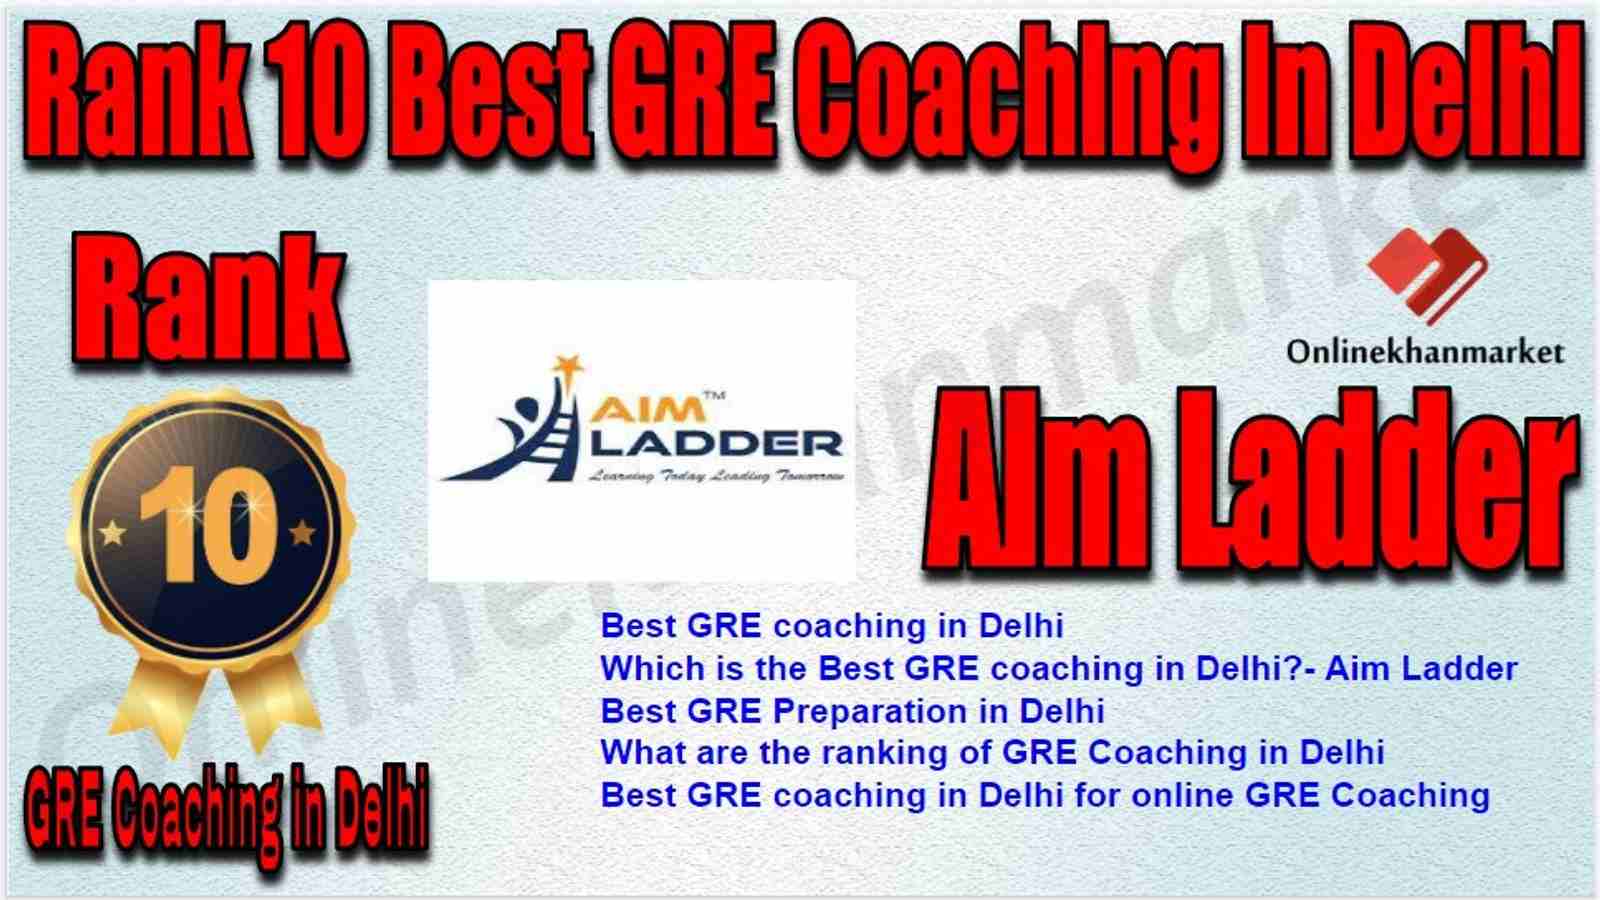 Rank 10 Best GRE Coaching in Delhi